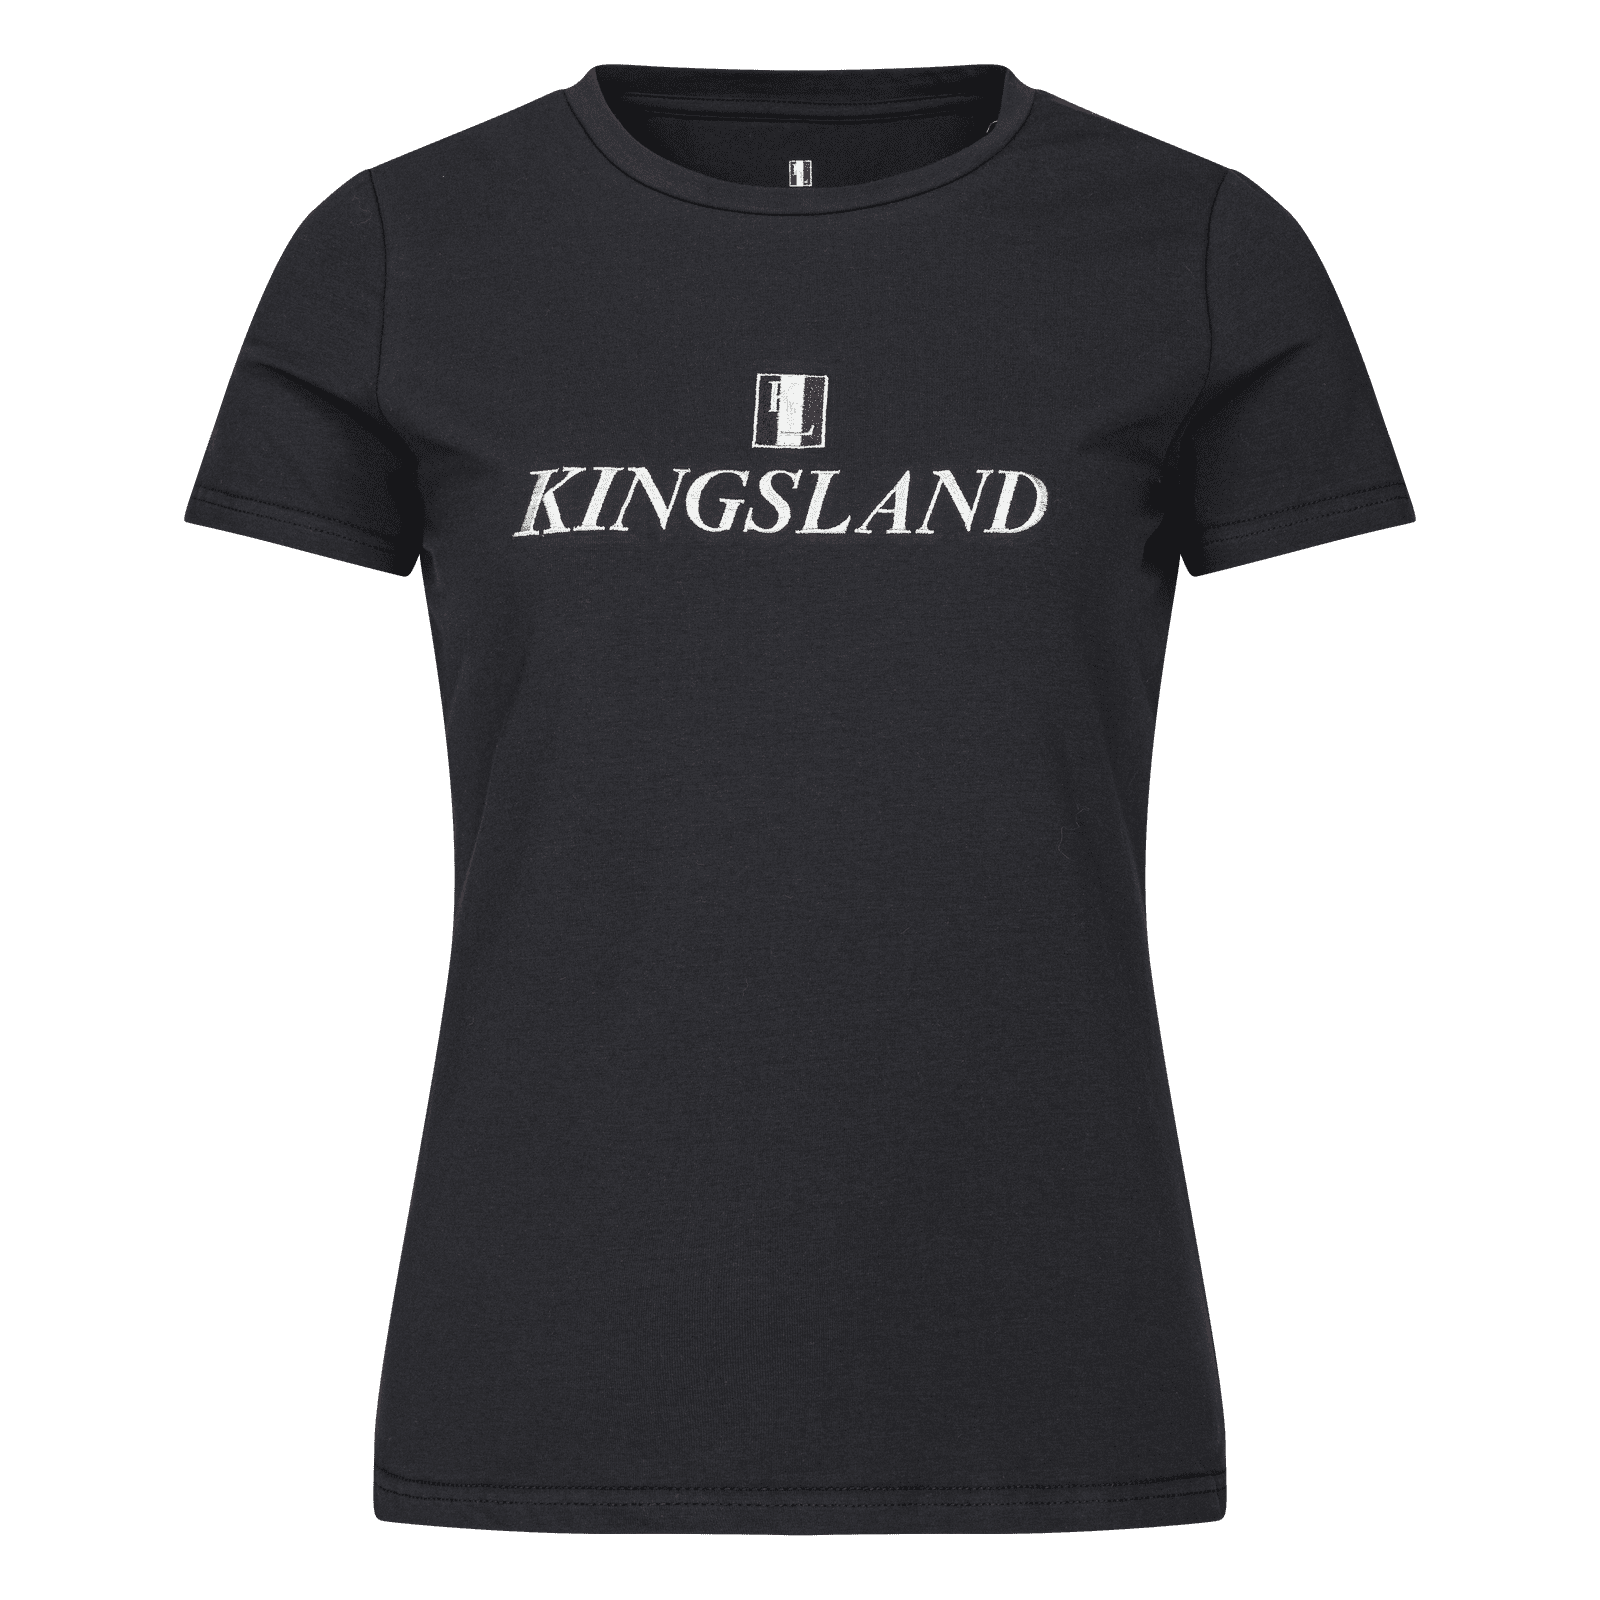 Kingsland Classic Damen-T-Shirt navy bei SP-Reitsport Kingsland bei SP-Reitsport